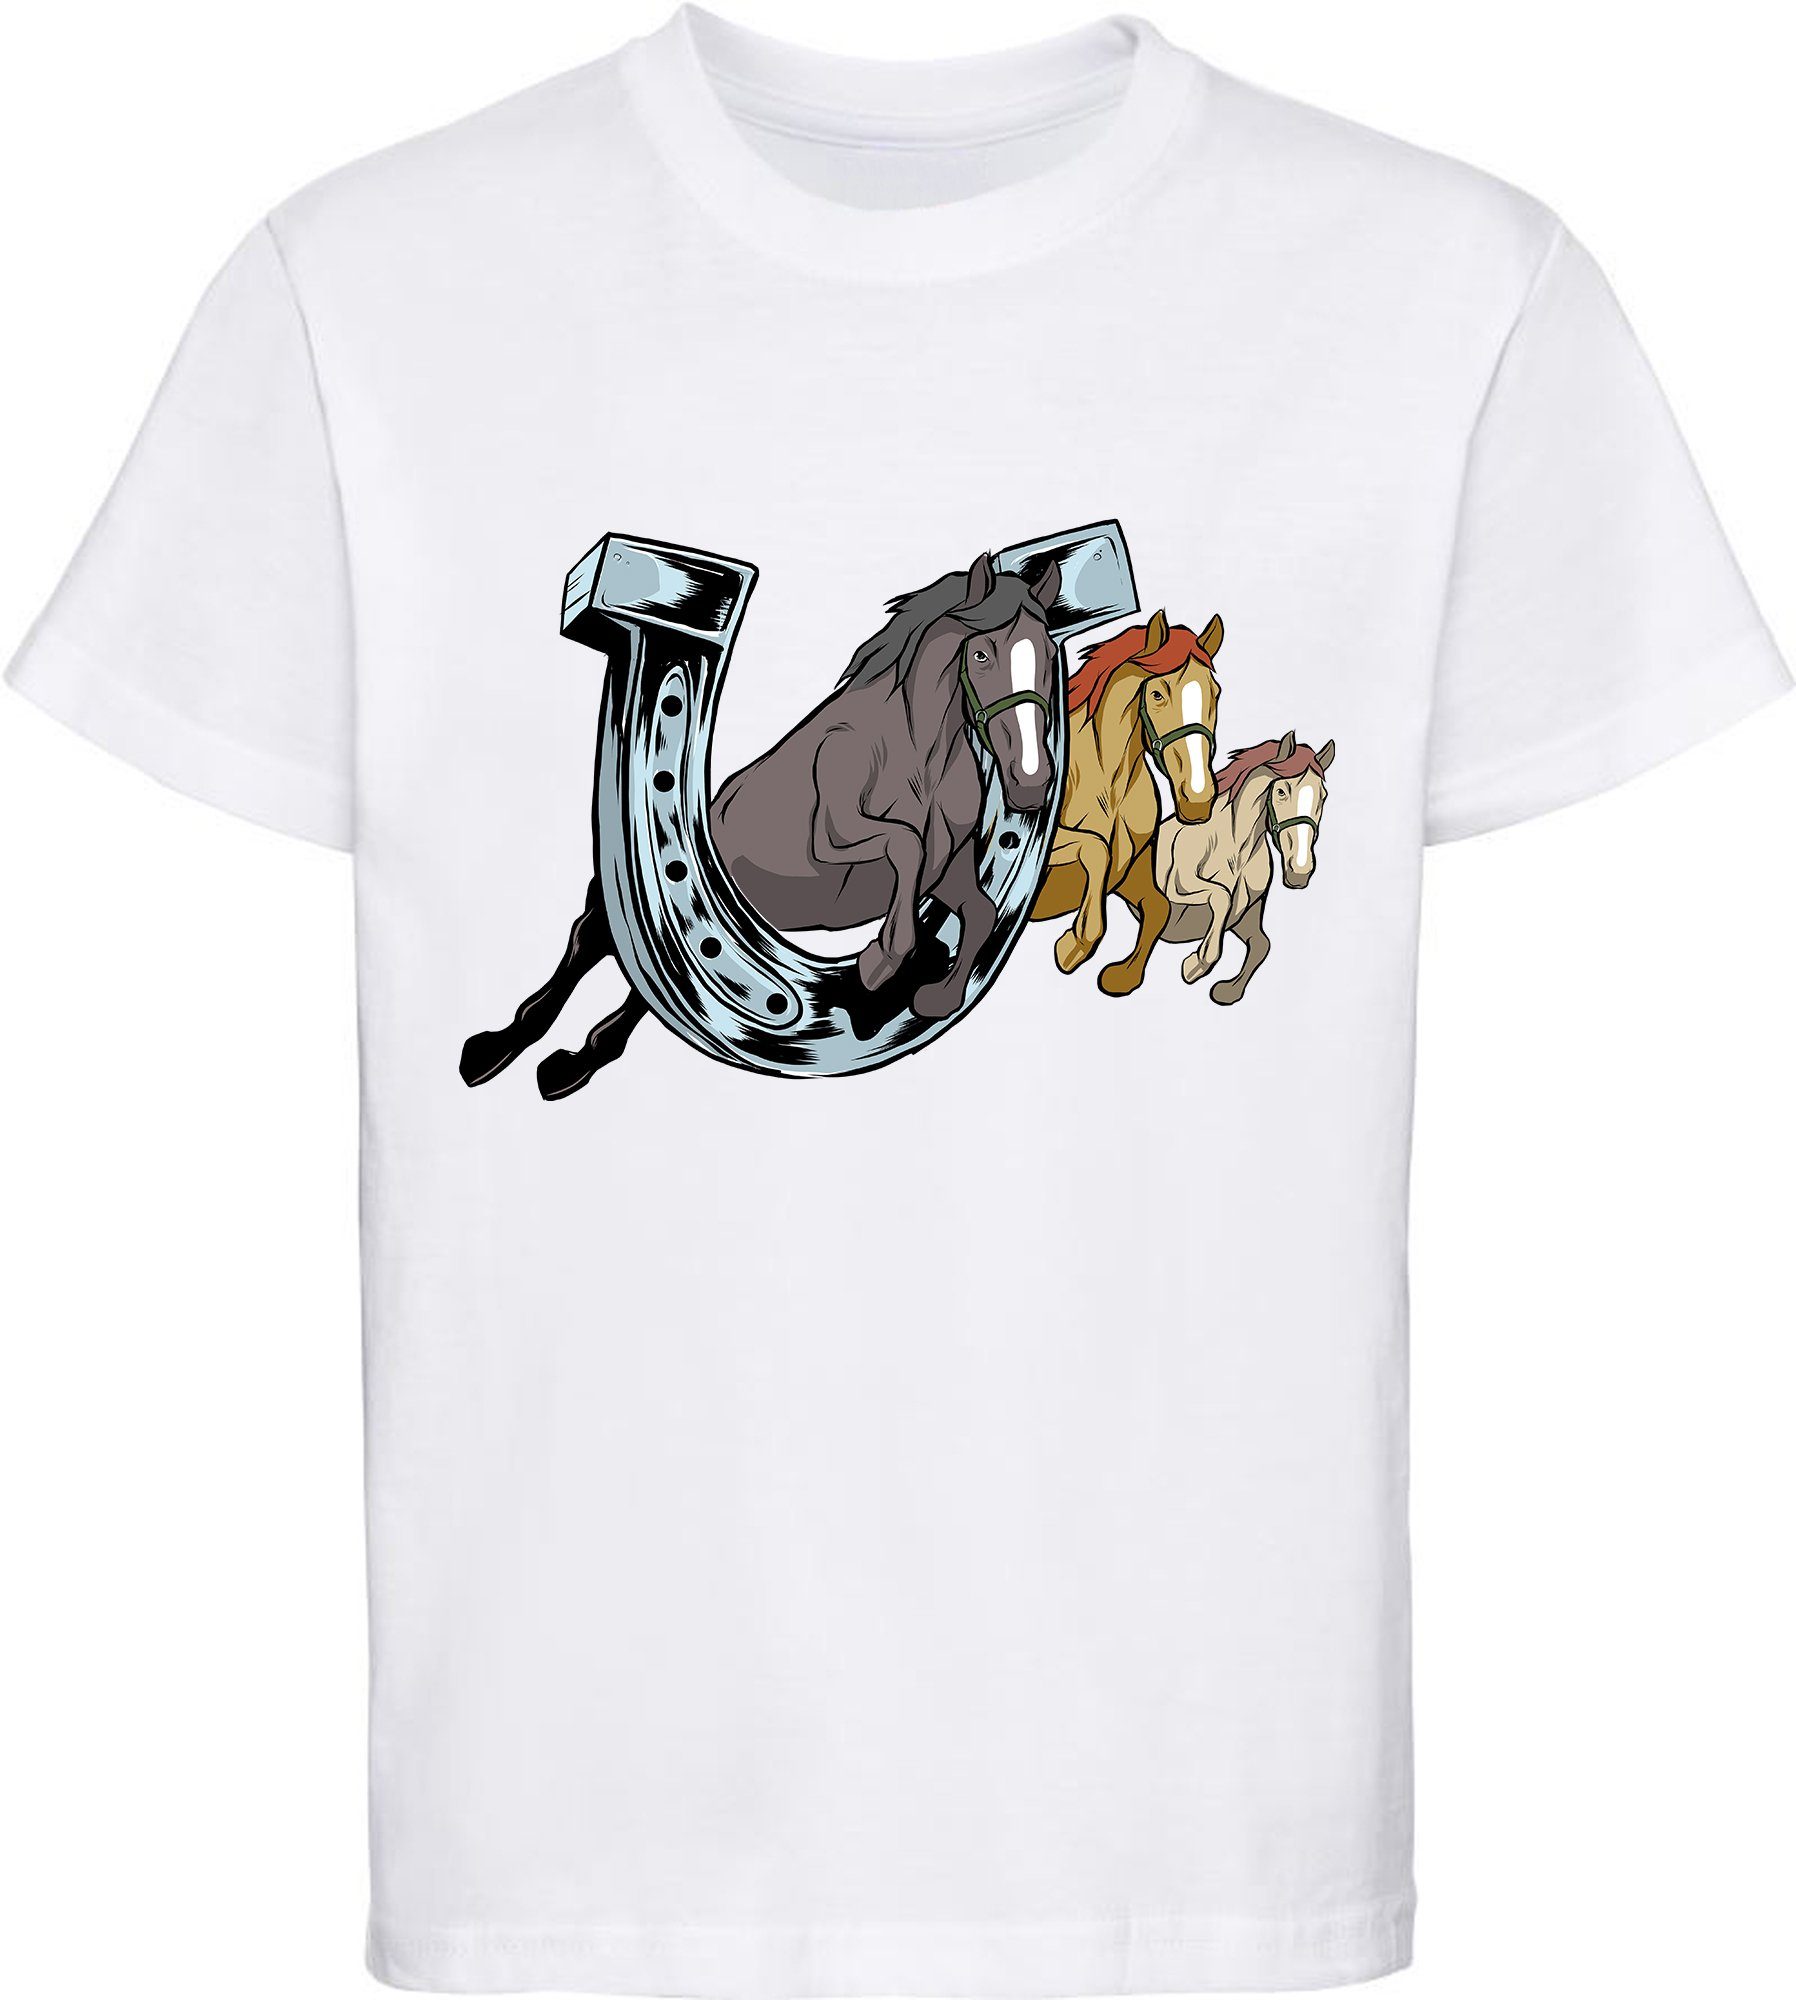 MyDesign24 Print-Shirt bedrucktes Mädchen T-Shirt drei springende Pferde durch ein Hufeisen Baumwollshirt mit Aufdruck, i145 weiss